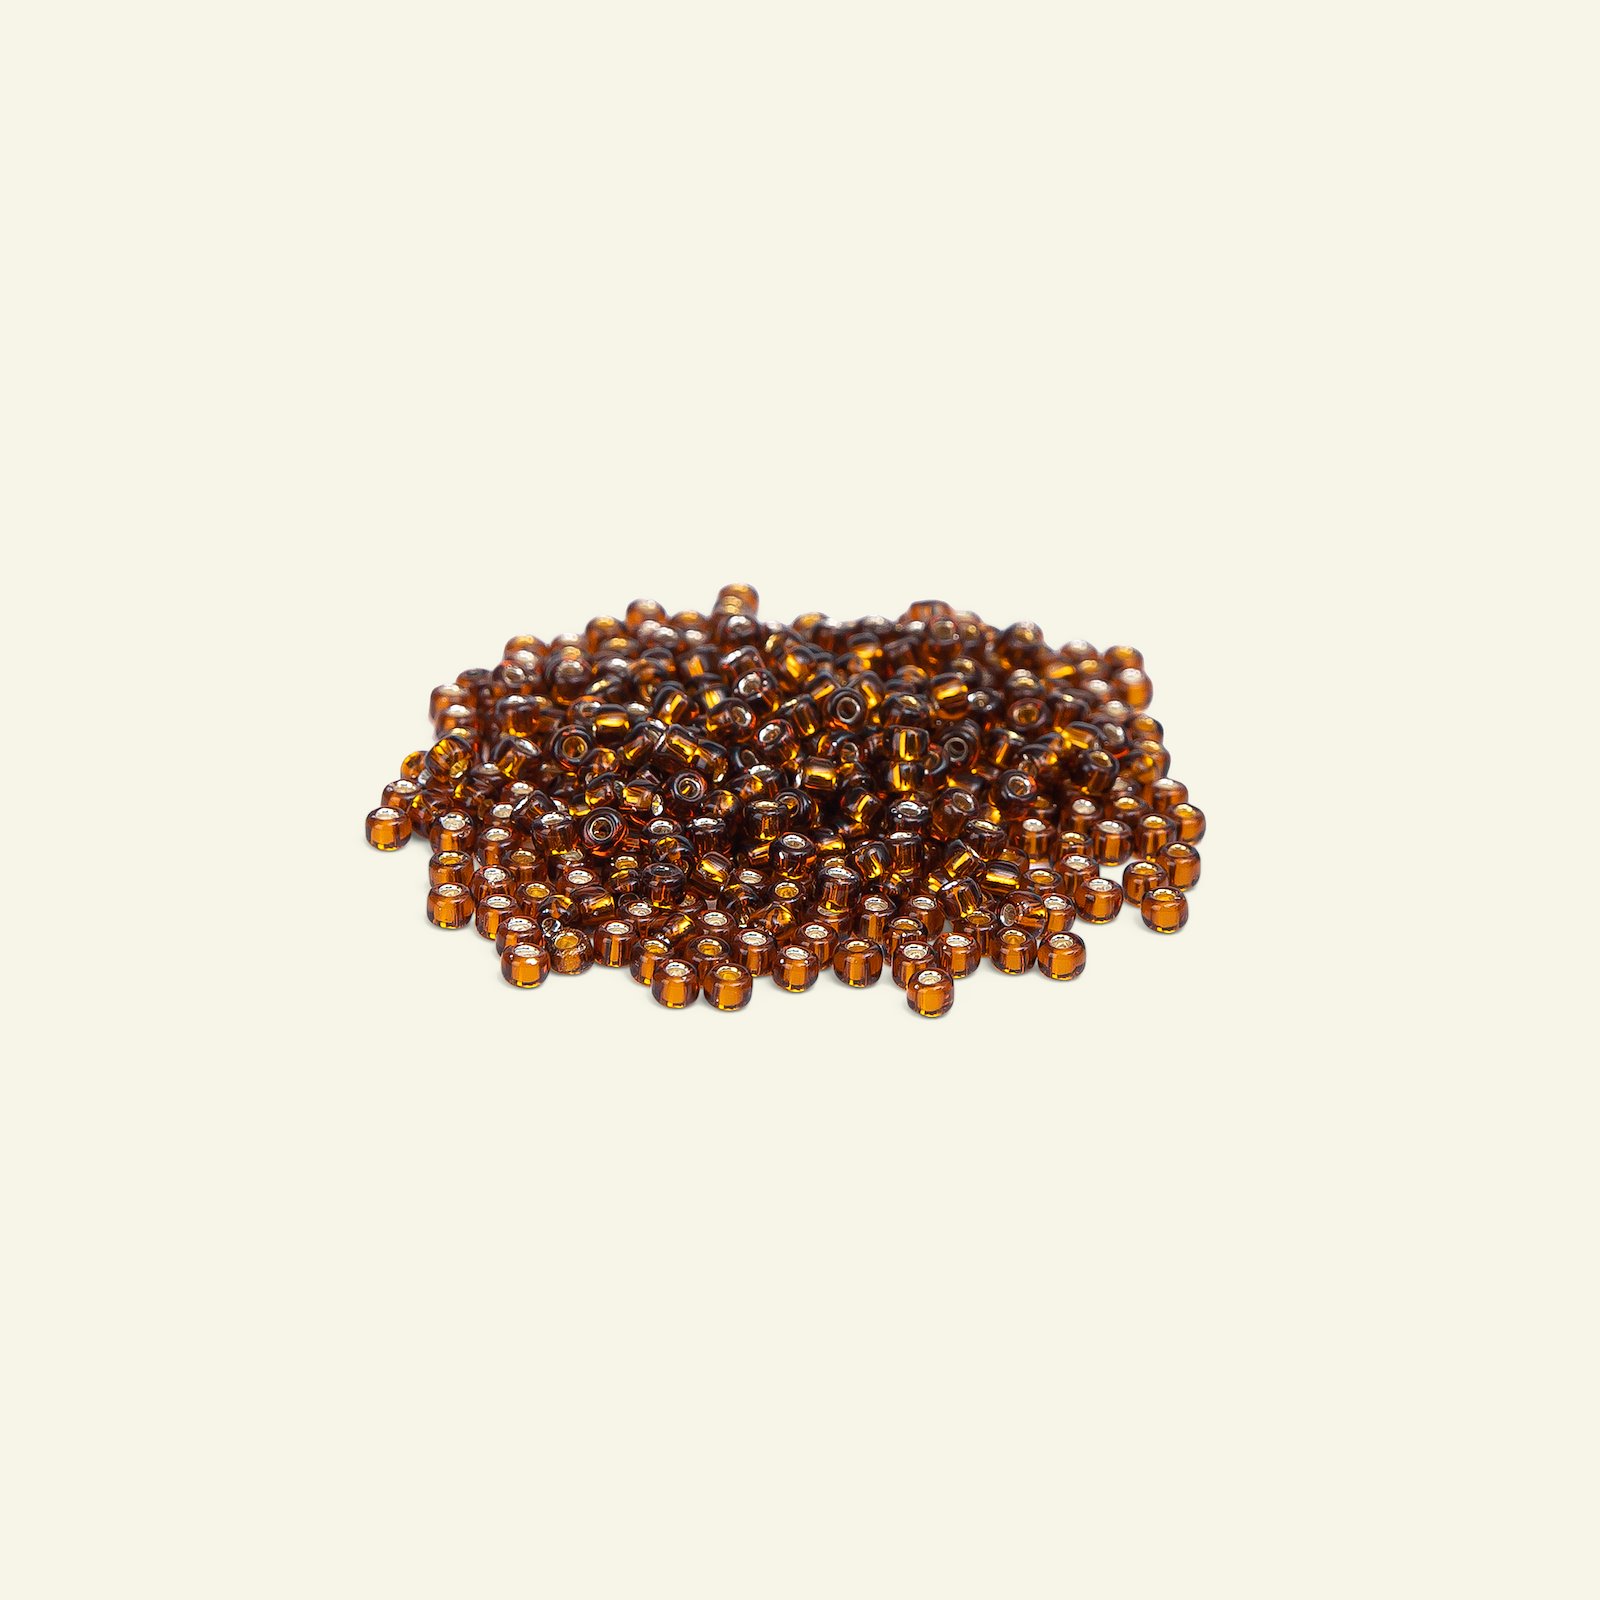 Matsuno glass bead 8/0 copper colored 47136_pack_b